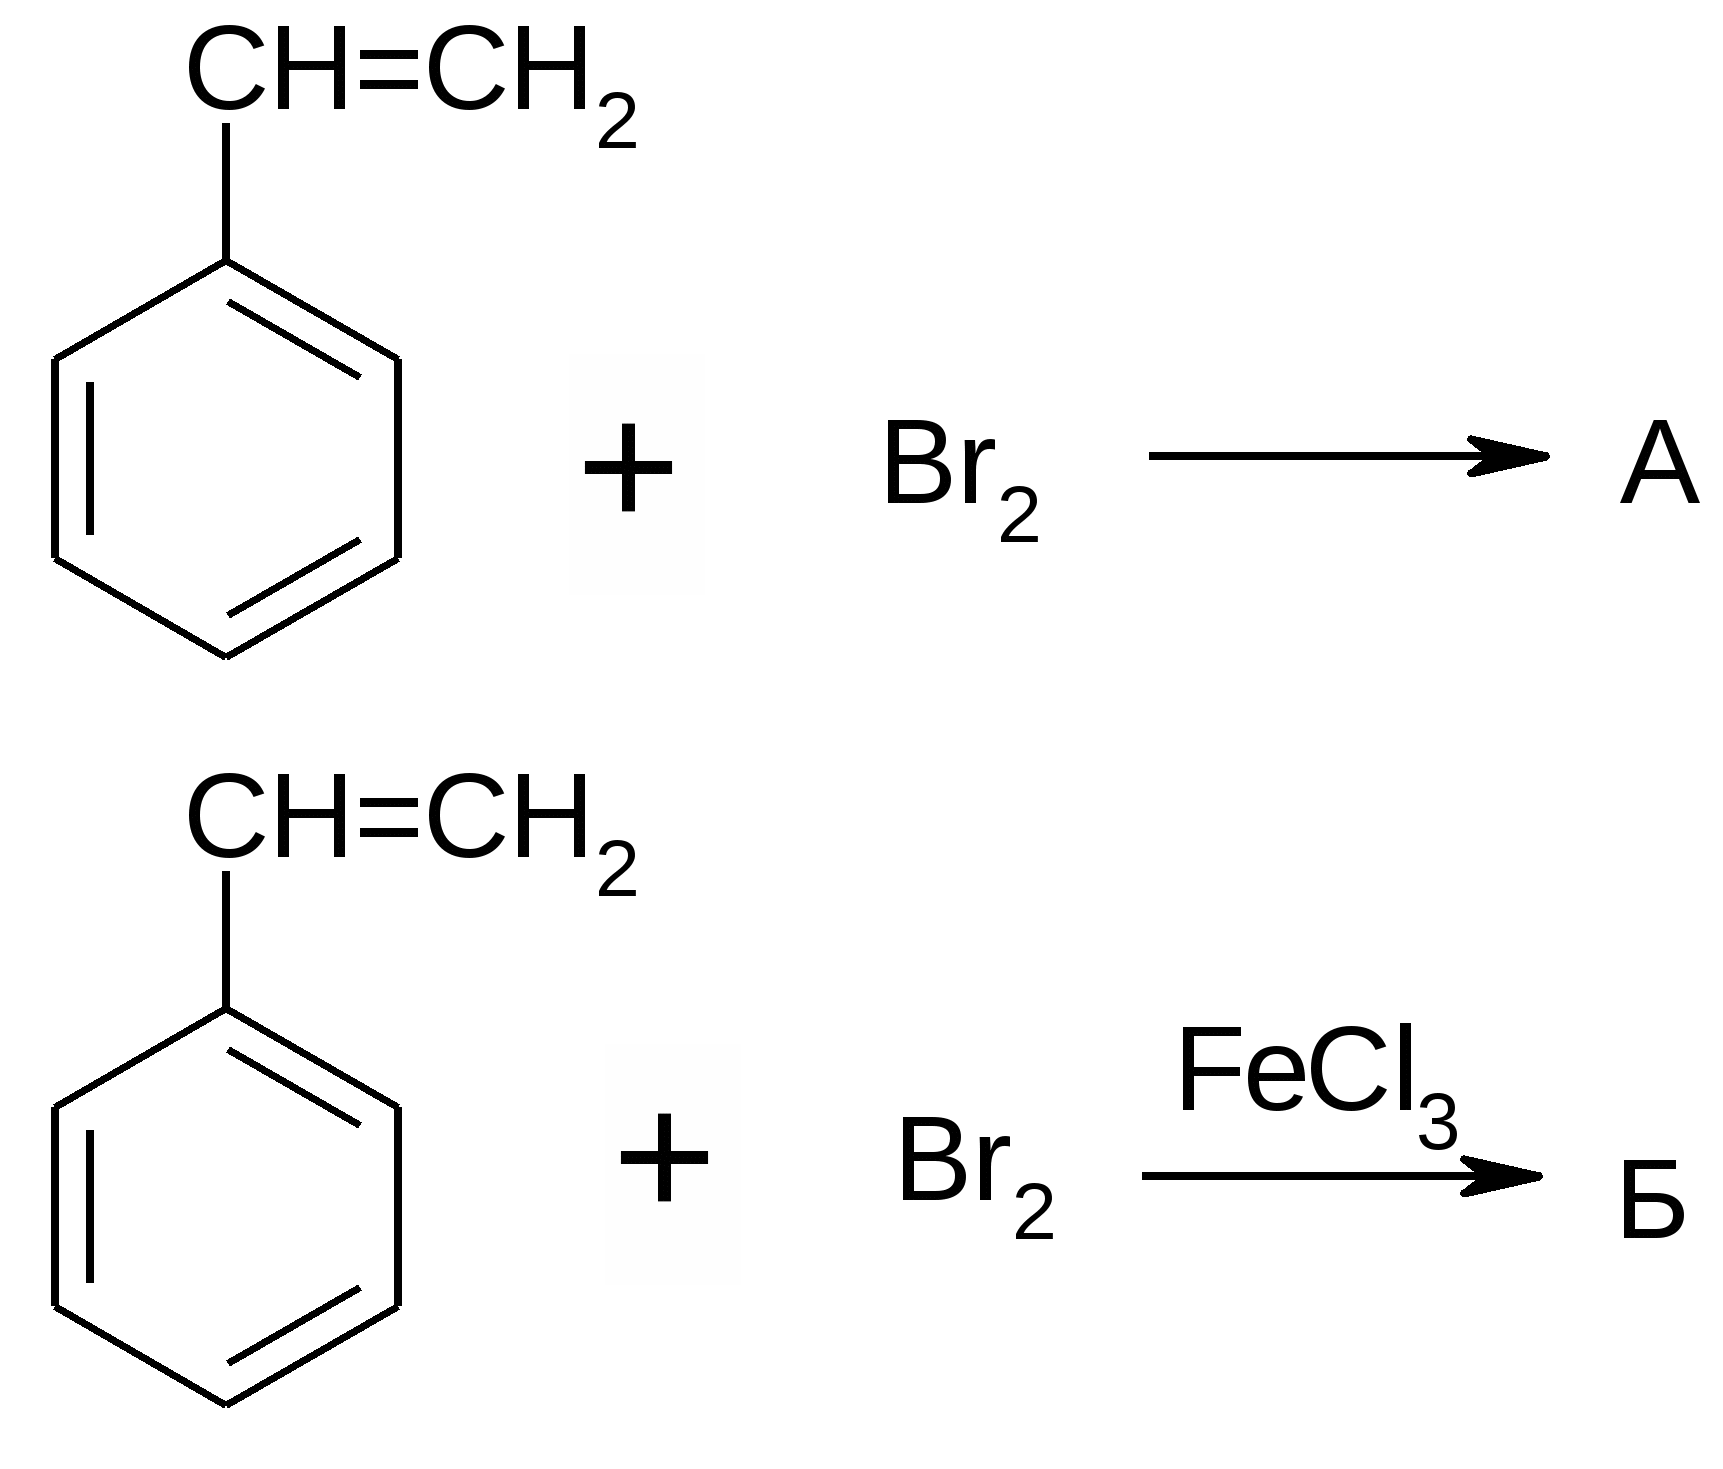 Вода брома формула. Этилбензол +2 br2. Пропилбензол+2br2. Хлорбензол реакция Вюрца. Этилбензол 2br2 на свету.